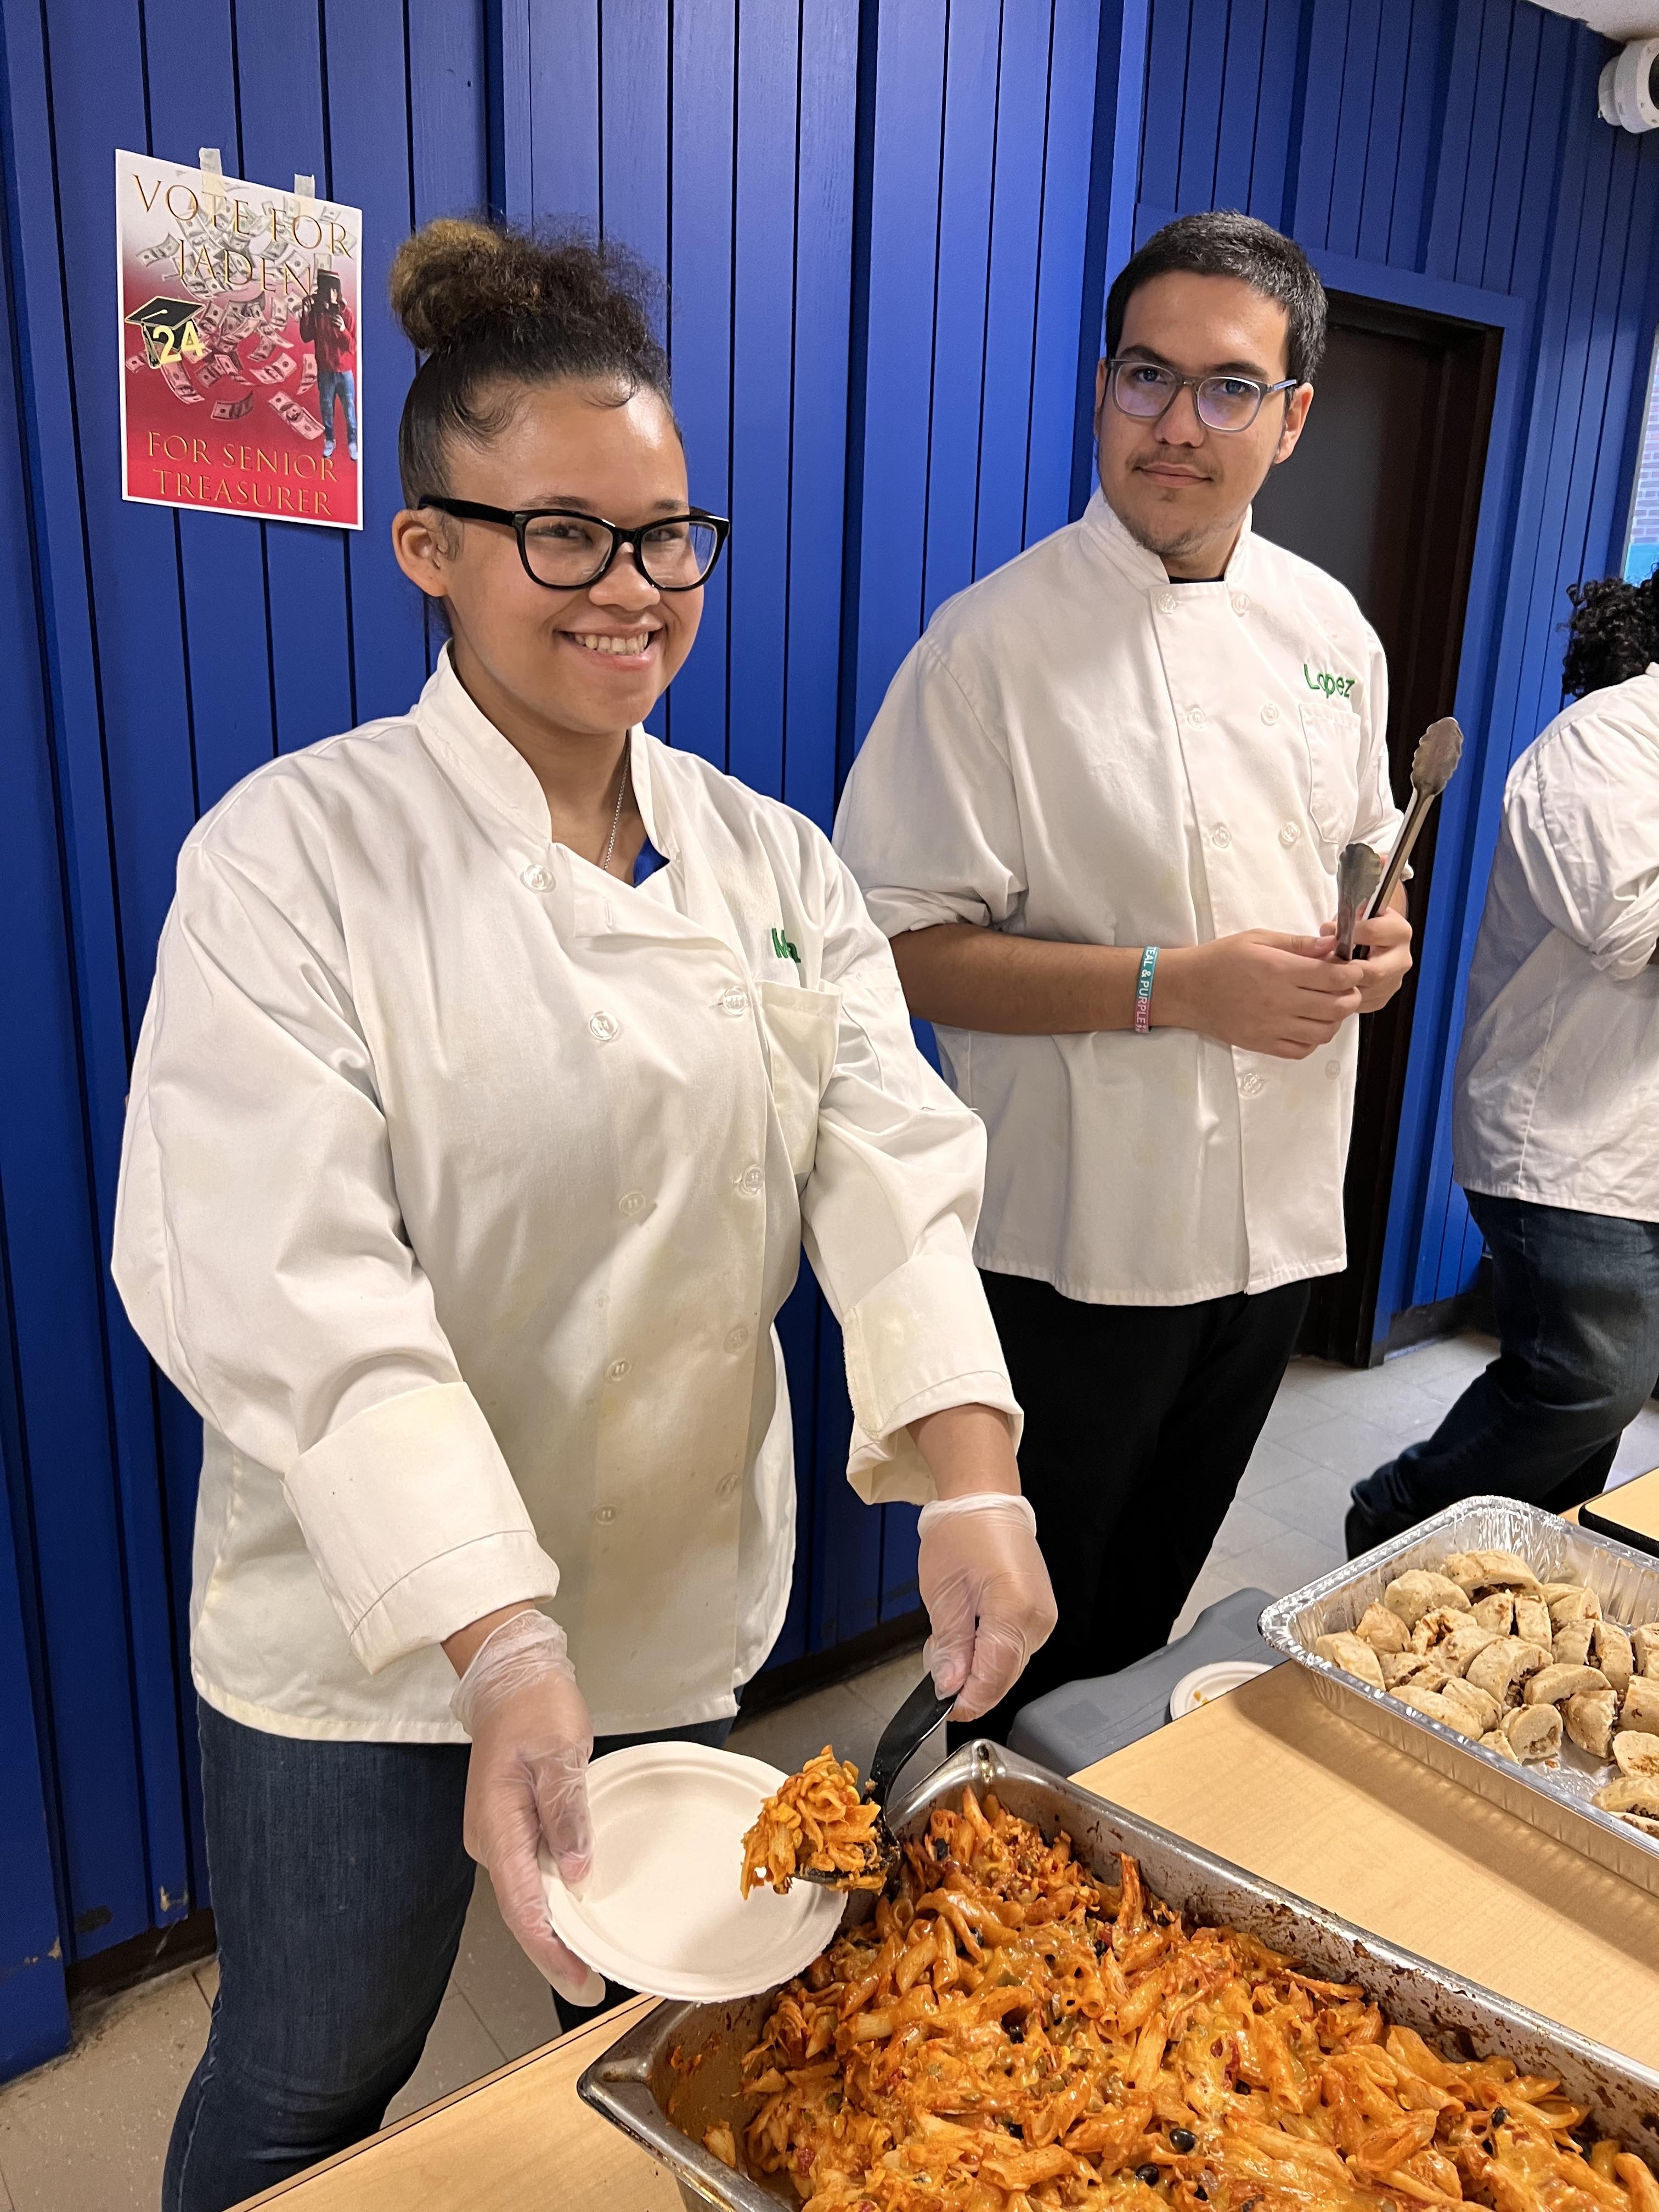 students serves food